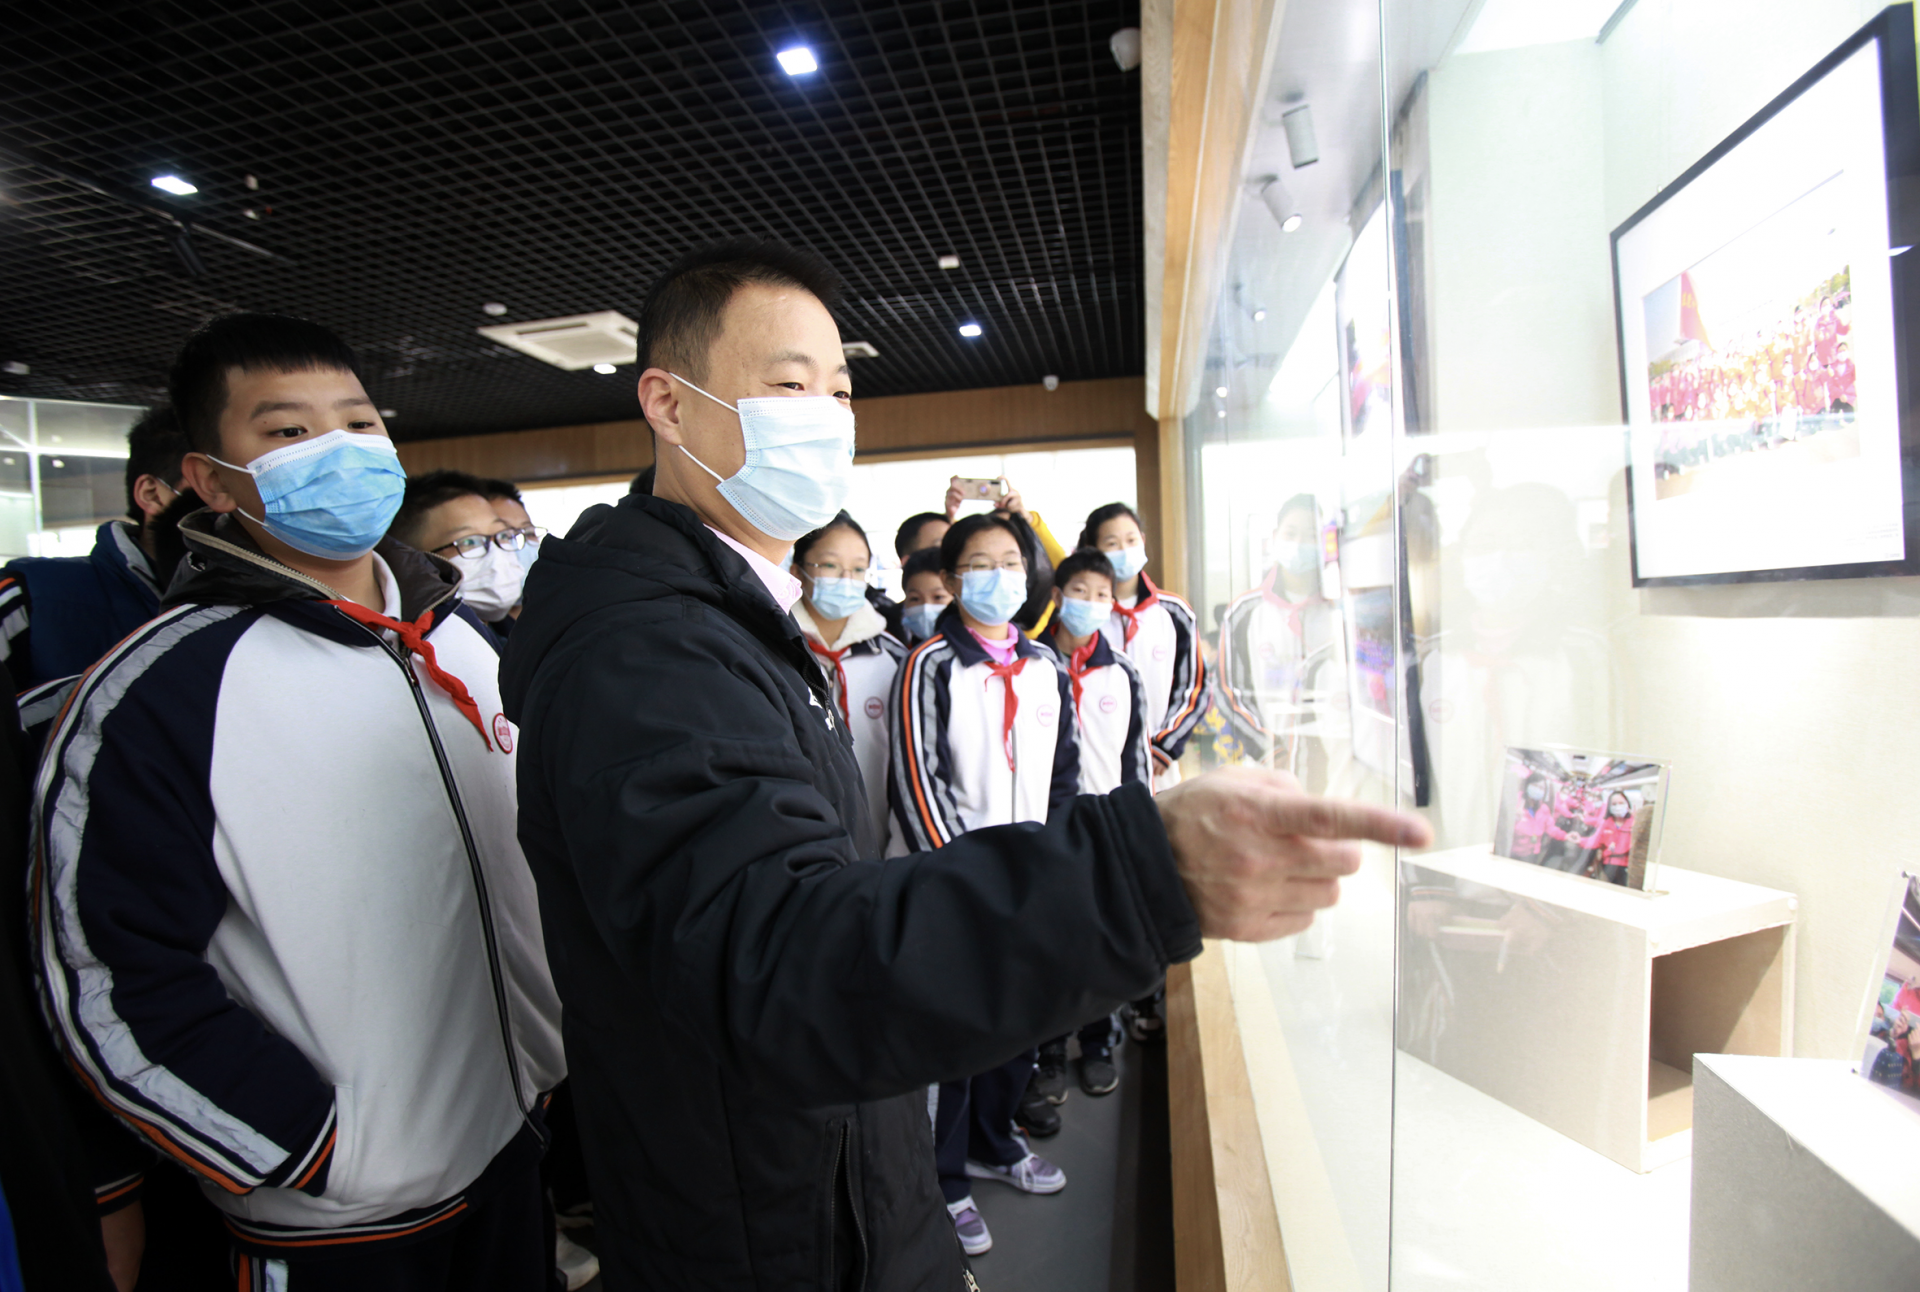 看展览、绘制抗疫主题口罩……东莞青少年积极参与防疫教育活动